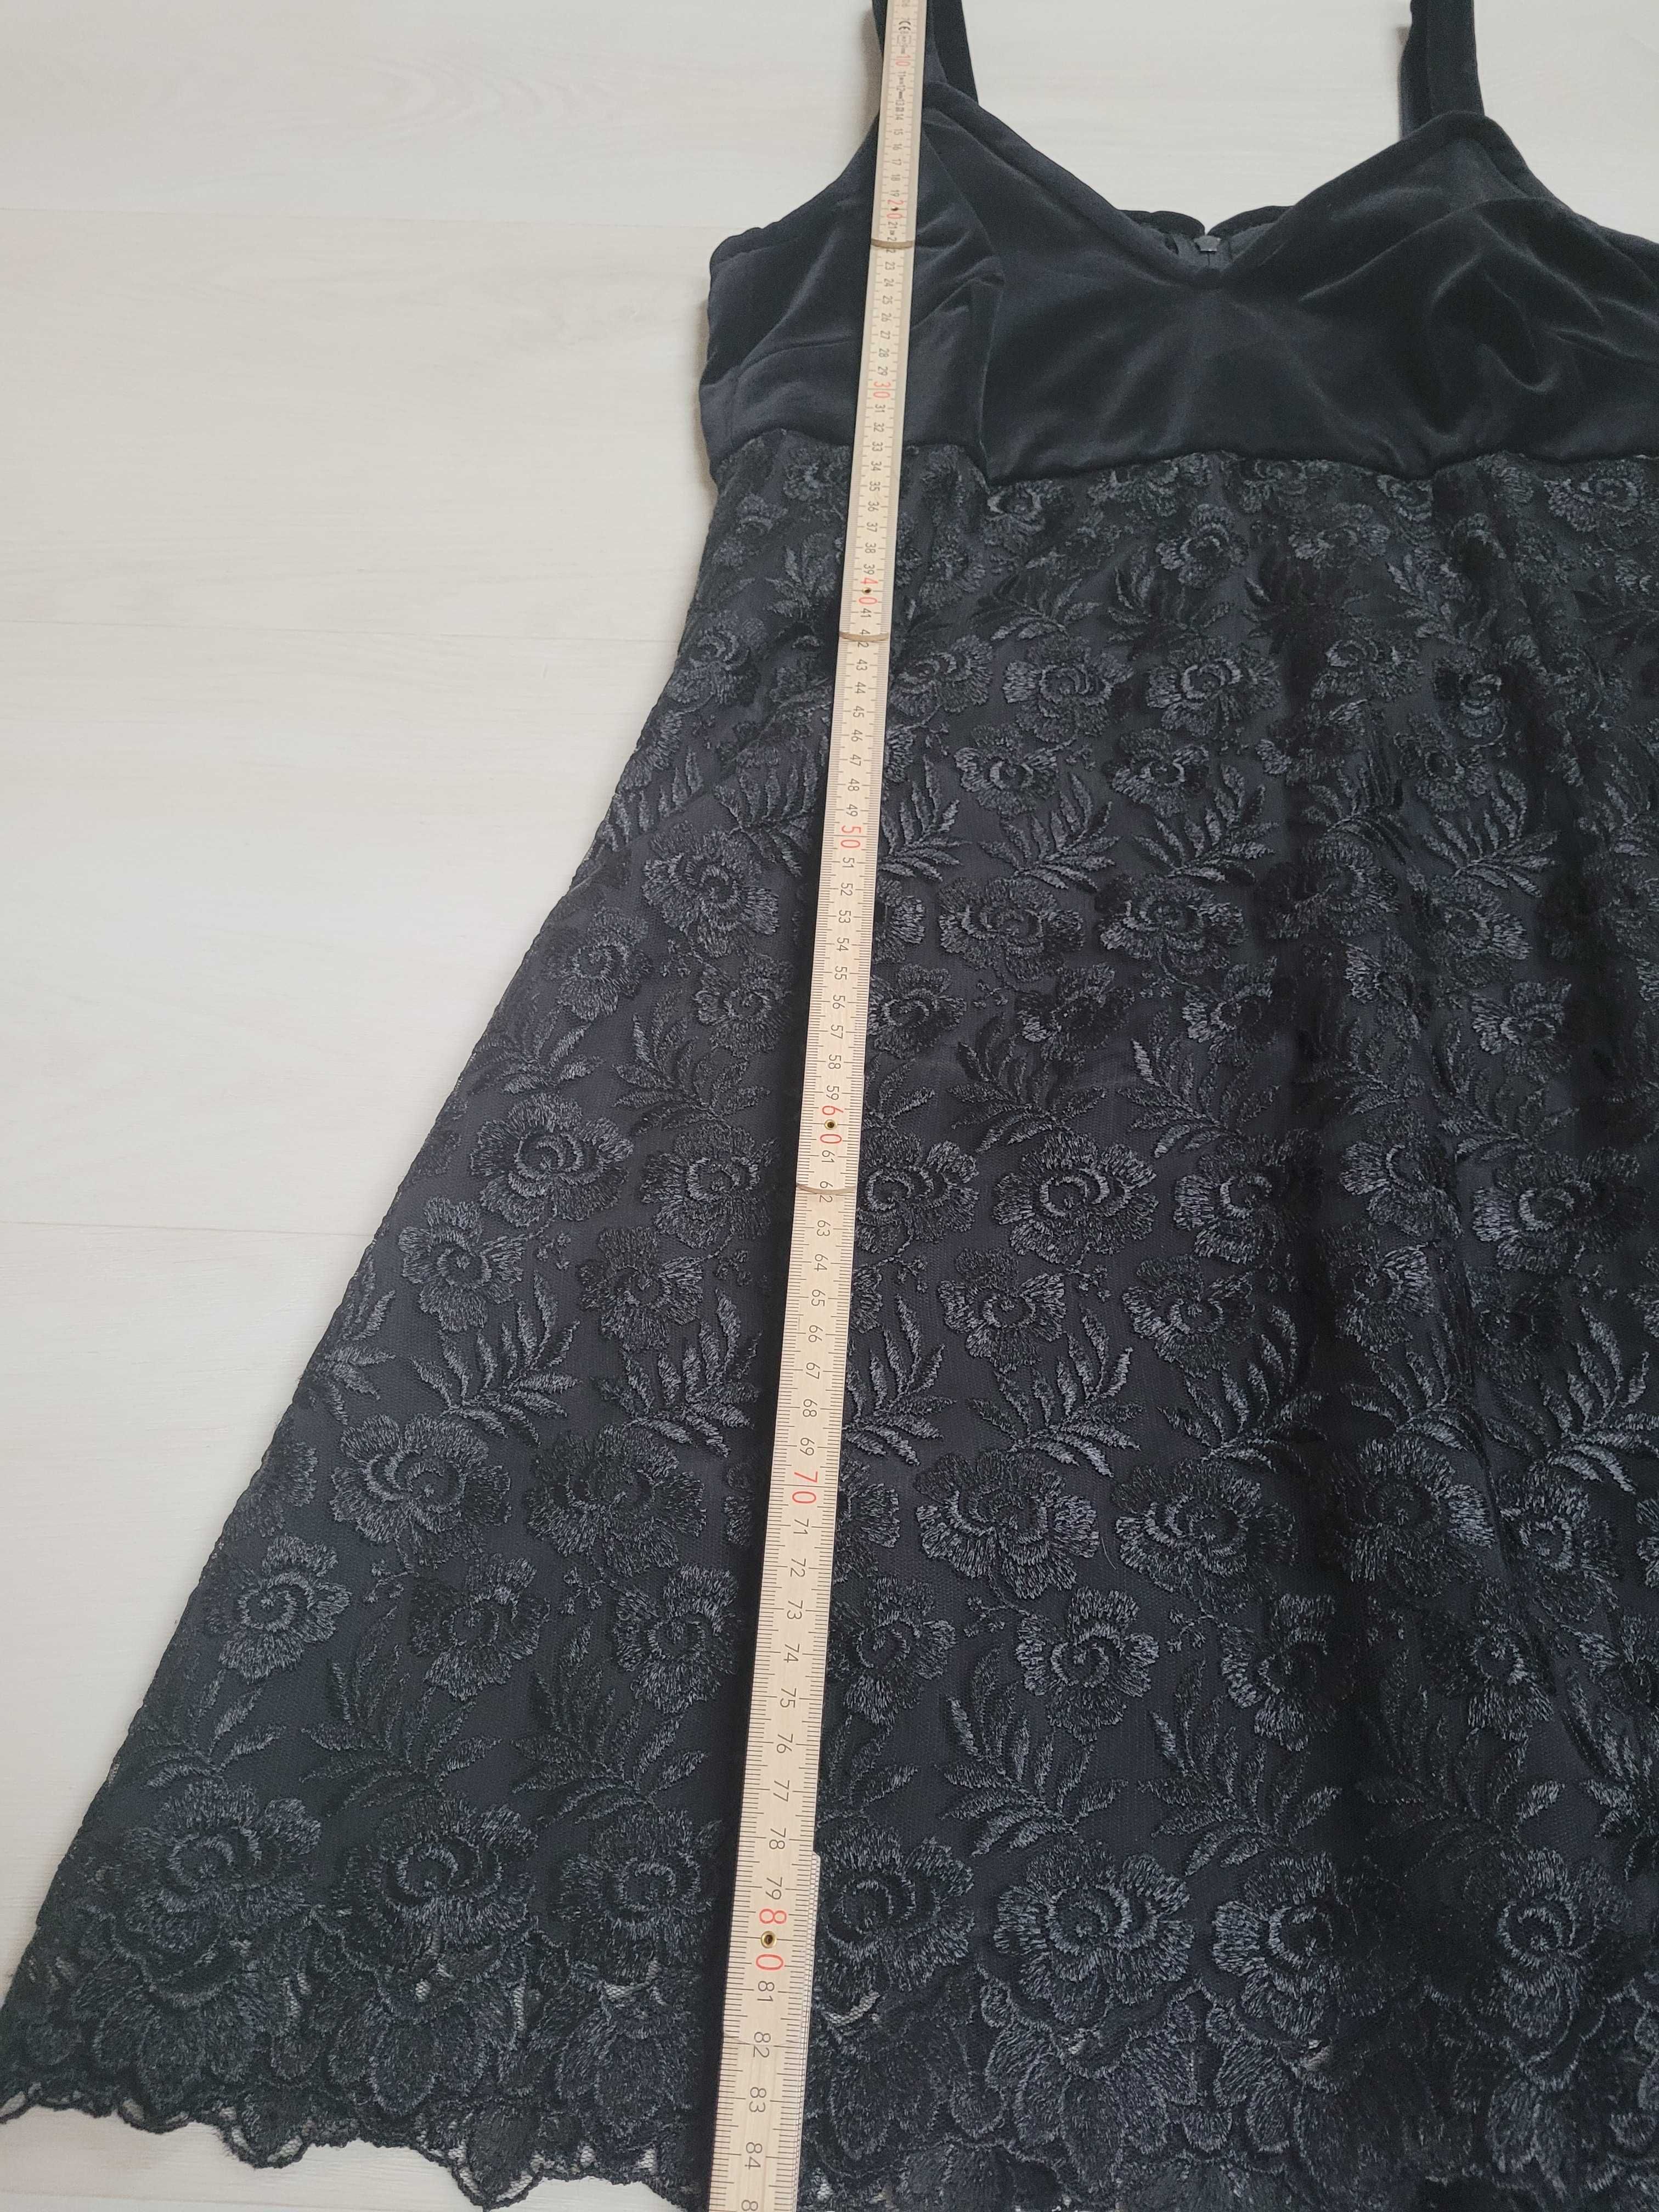 czarna sukienka mini koronkowa aksamit rozm S jak NOWA 1x ubrana